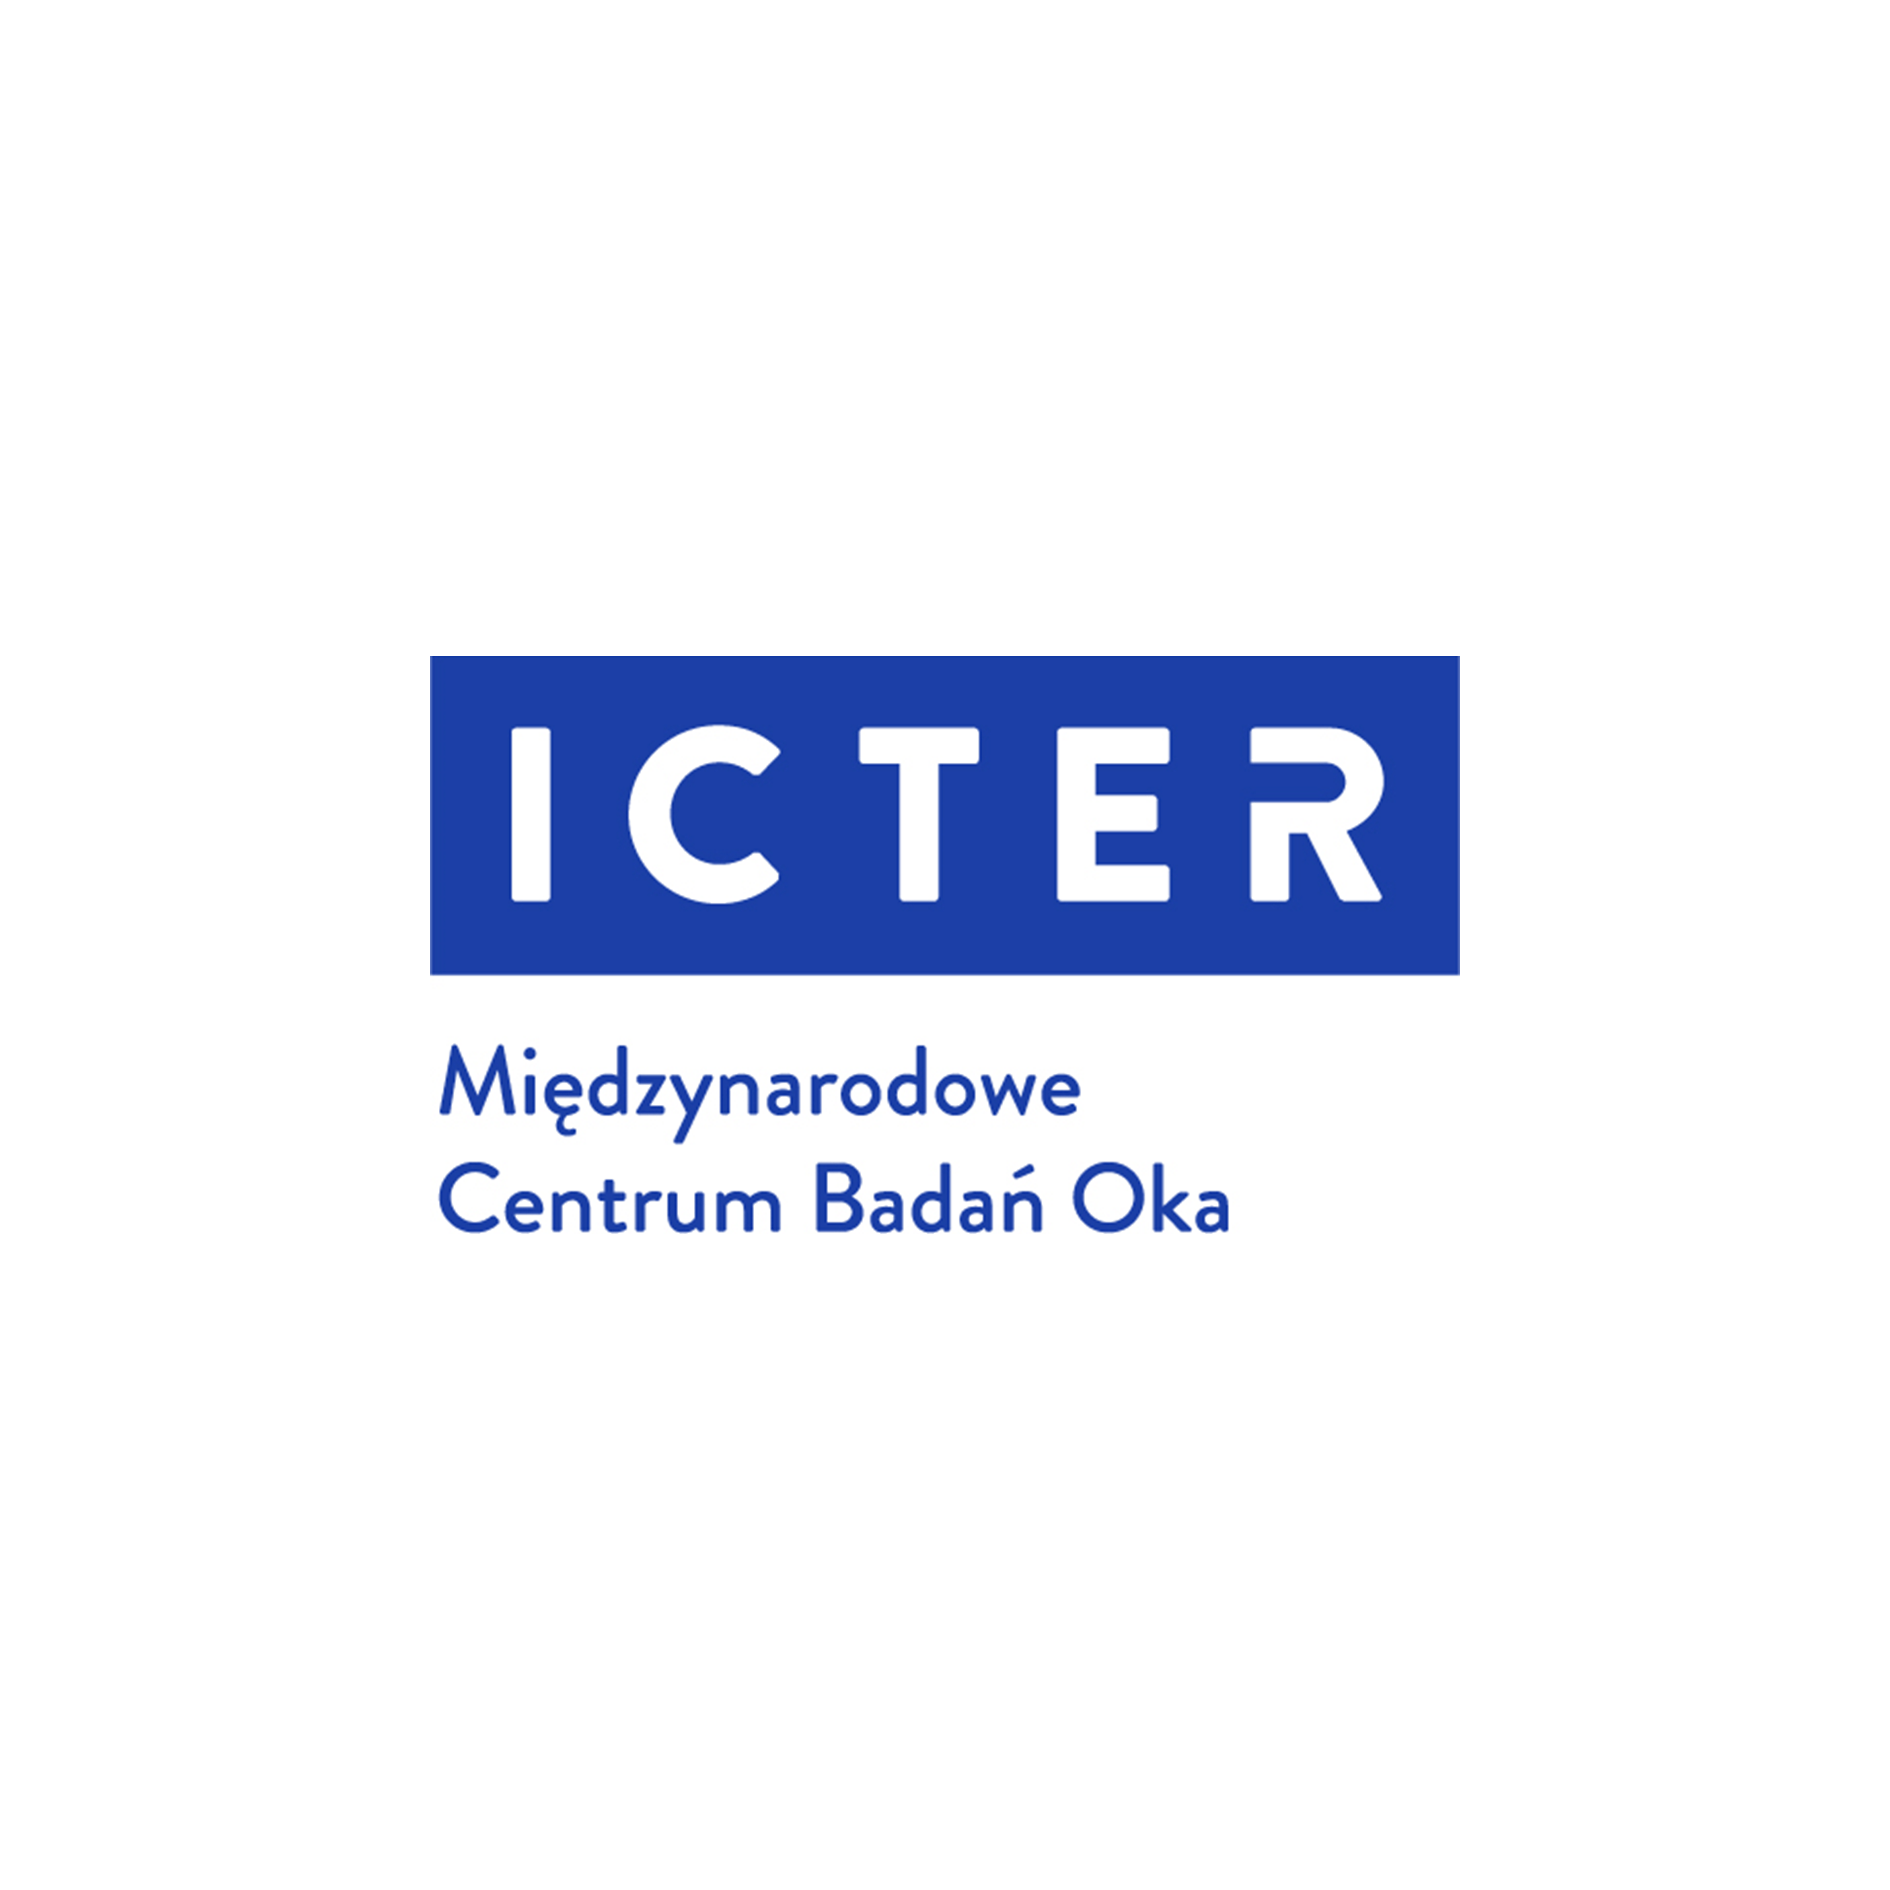 Międzynarodowe Centrum Badań Oka  - ICTER